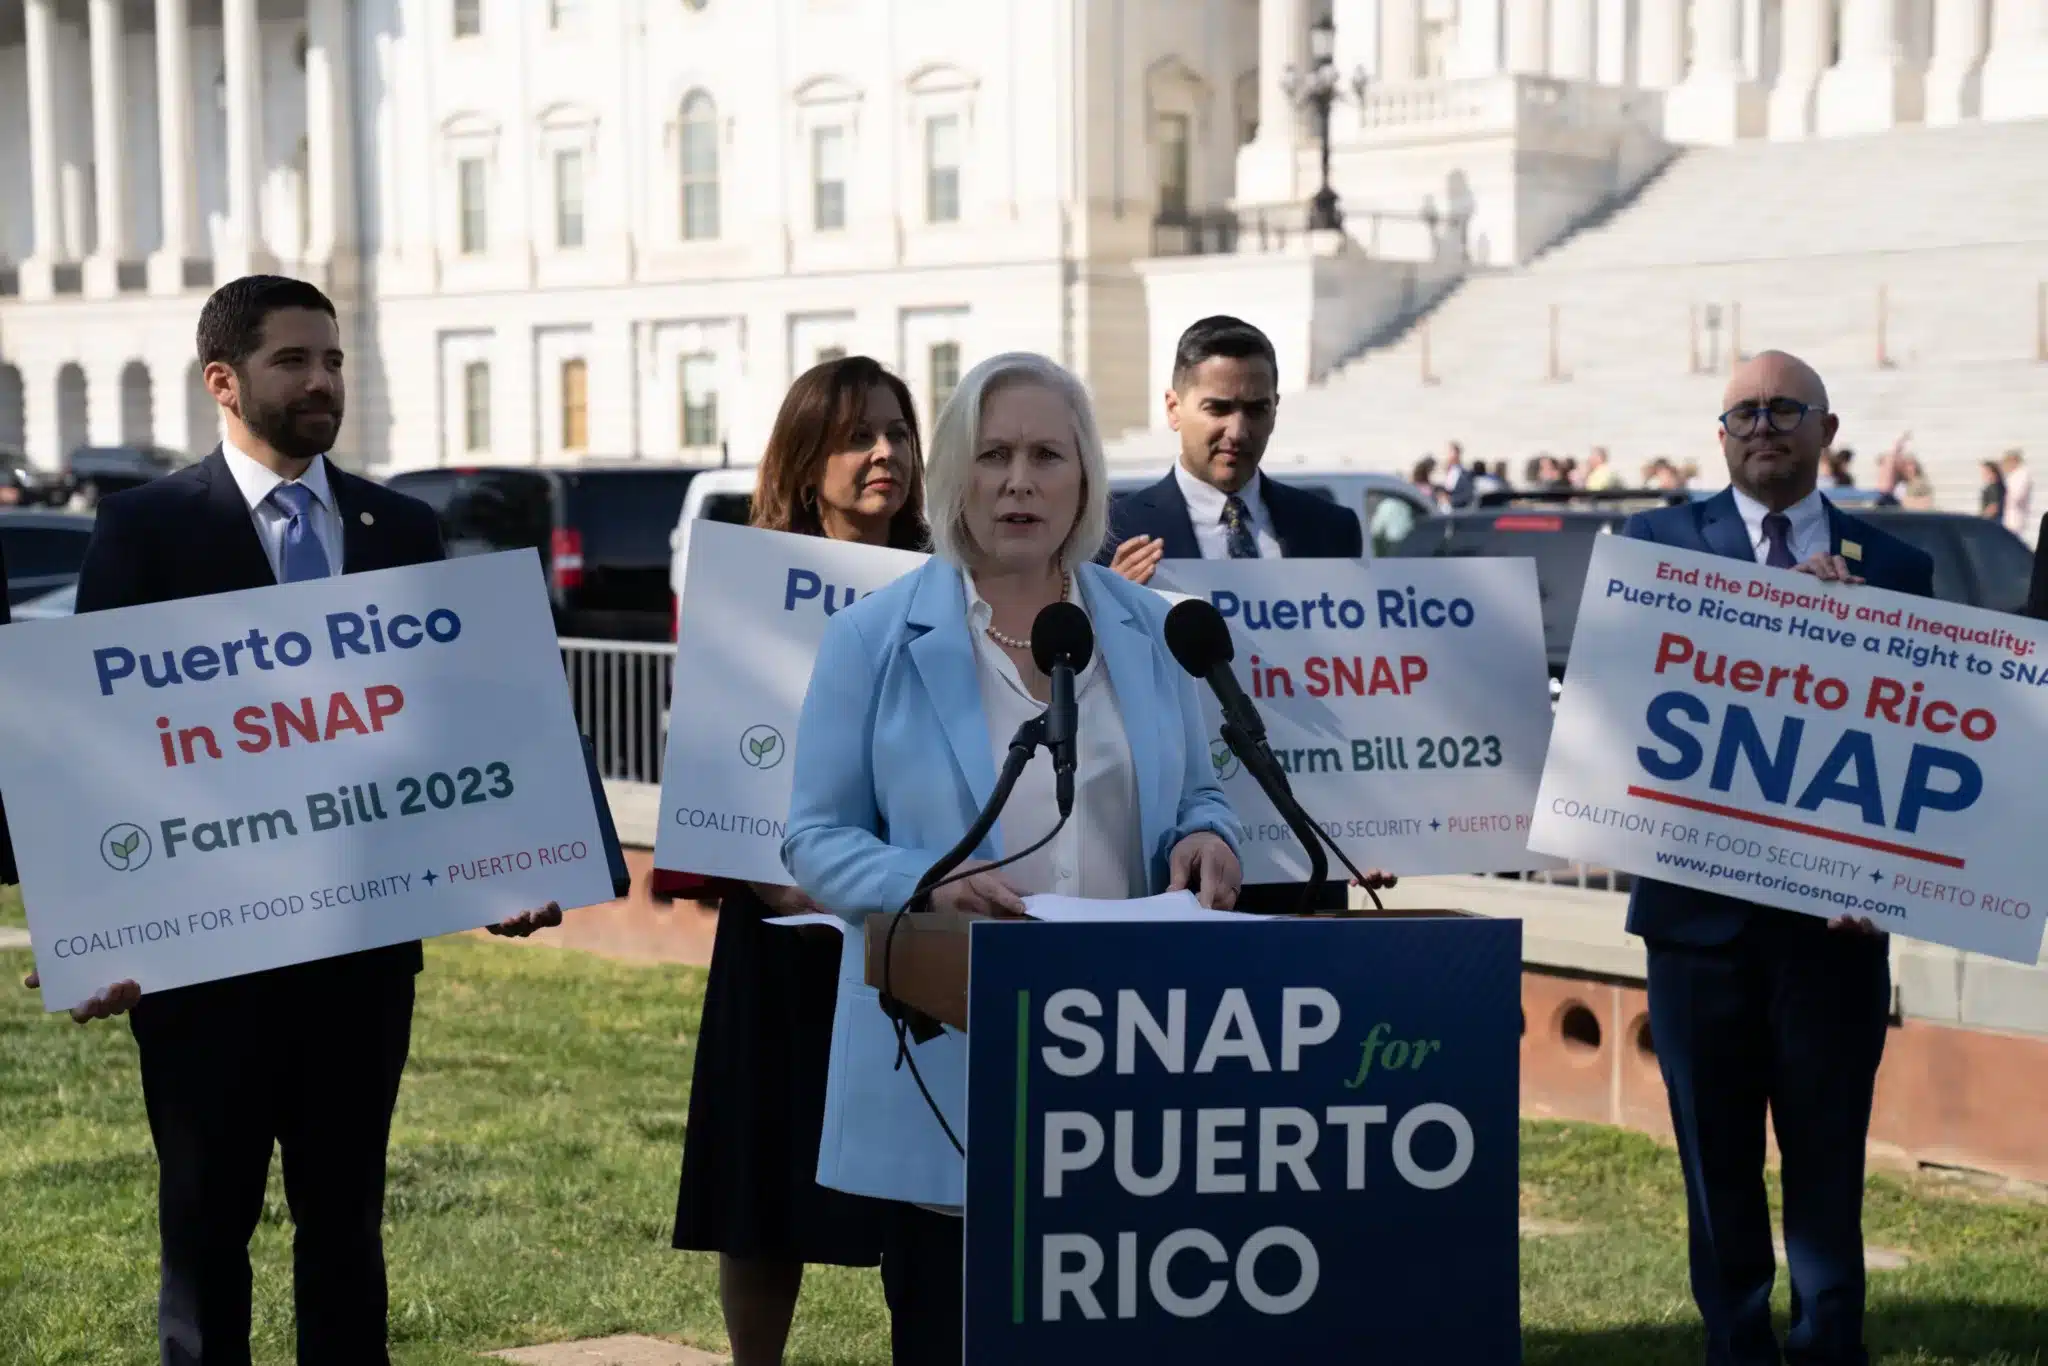 Puerto Rico pursues SNAP benefits in Congress